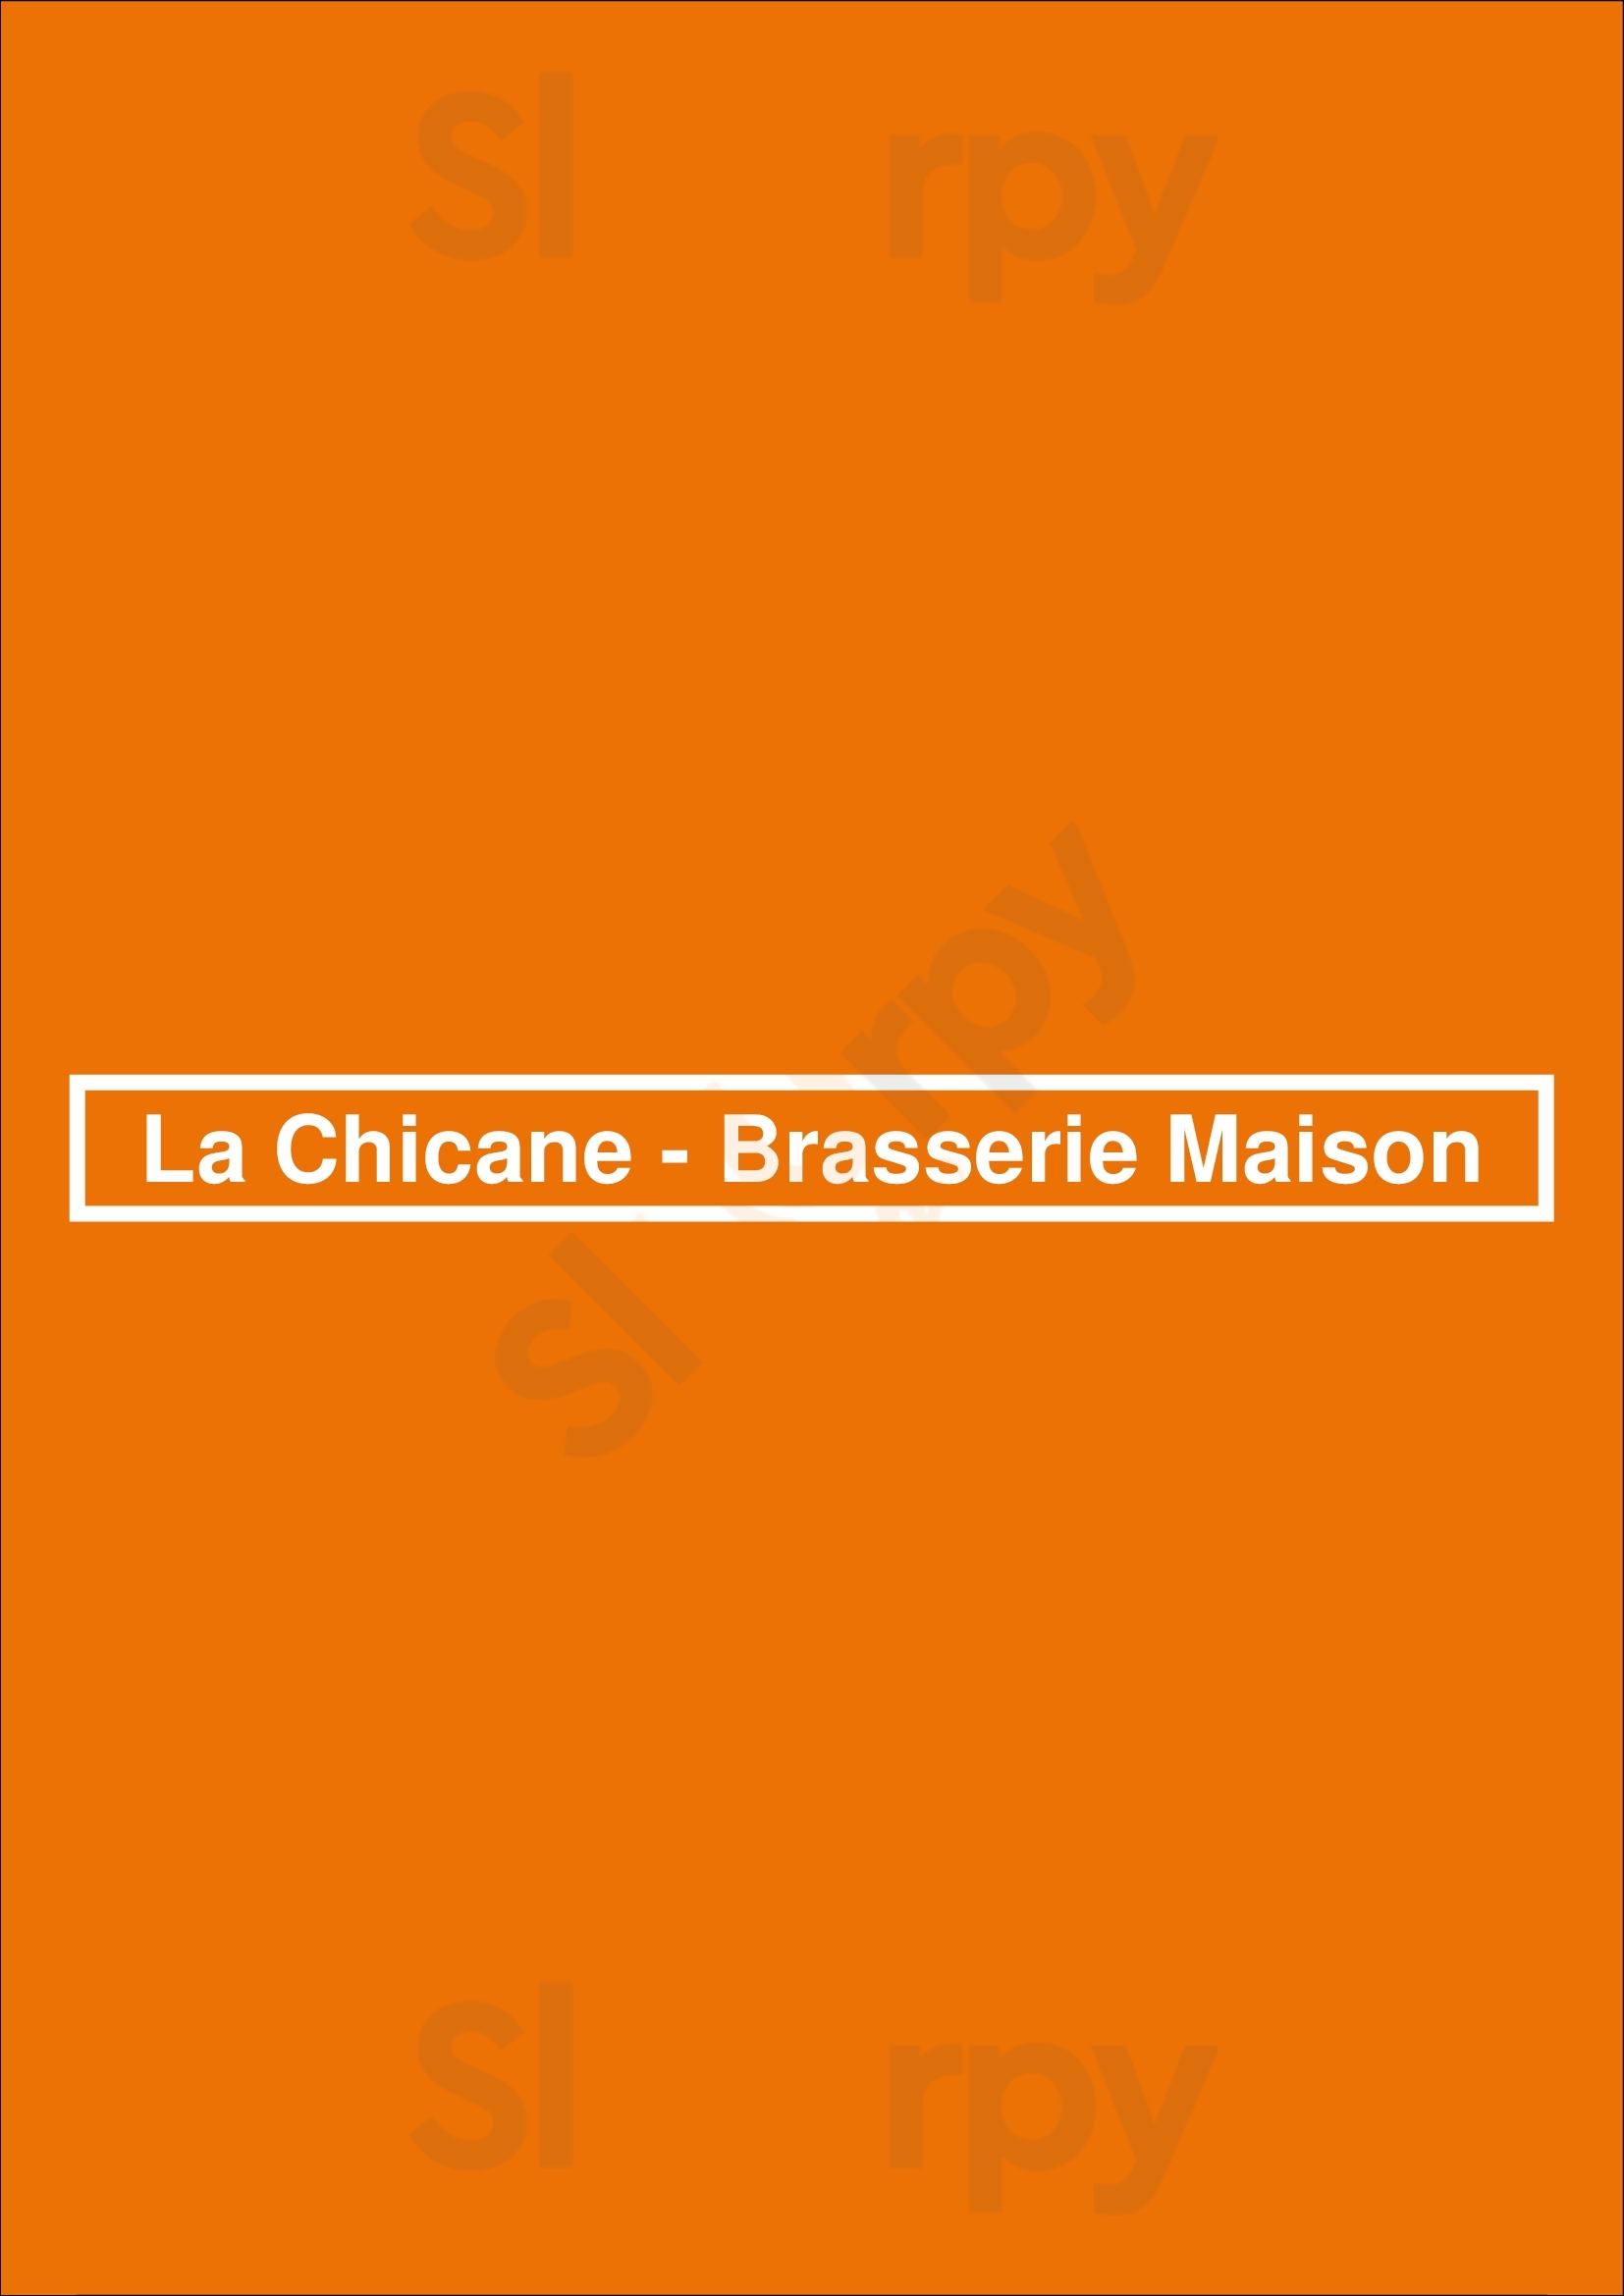 La Chicane - Brasserie Maison Ville du Mans Menu - 1